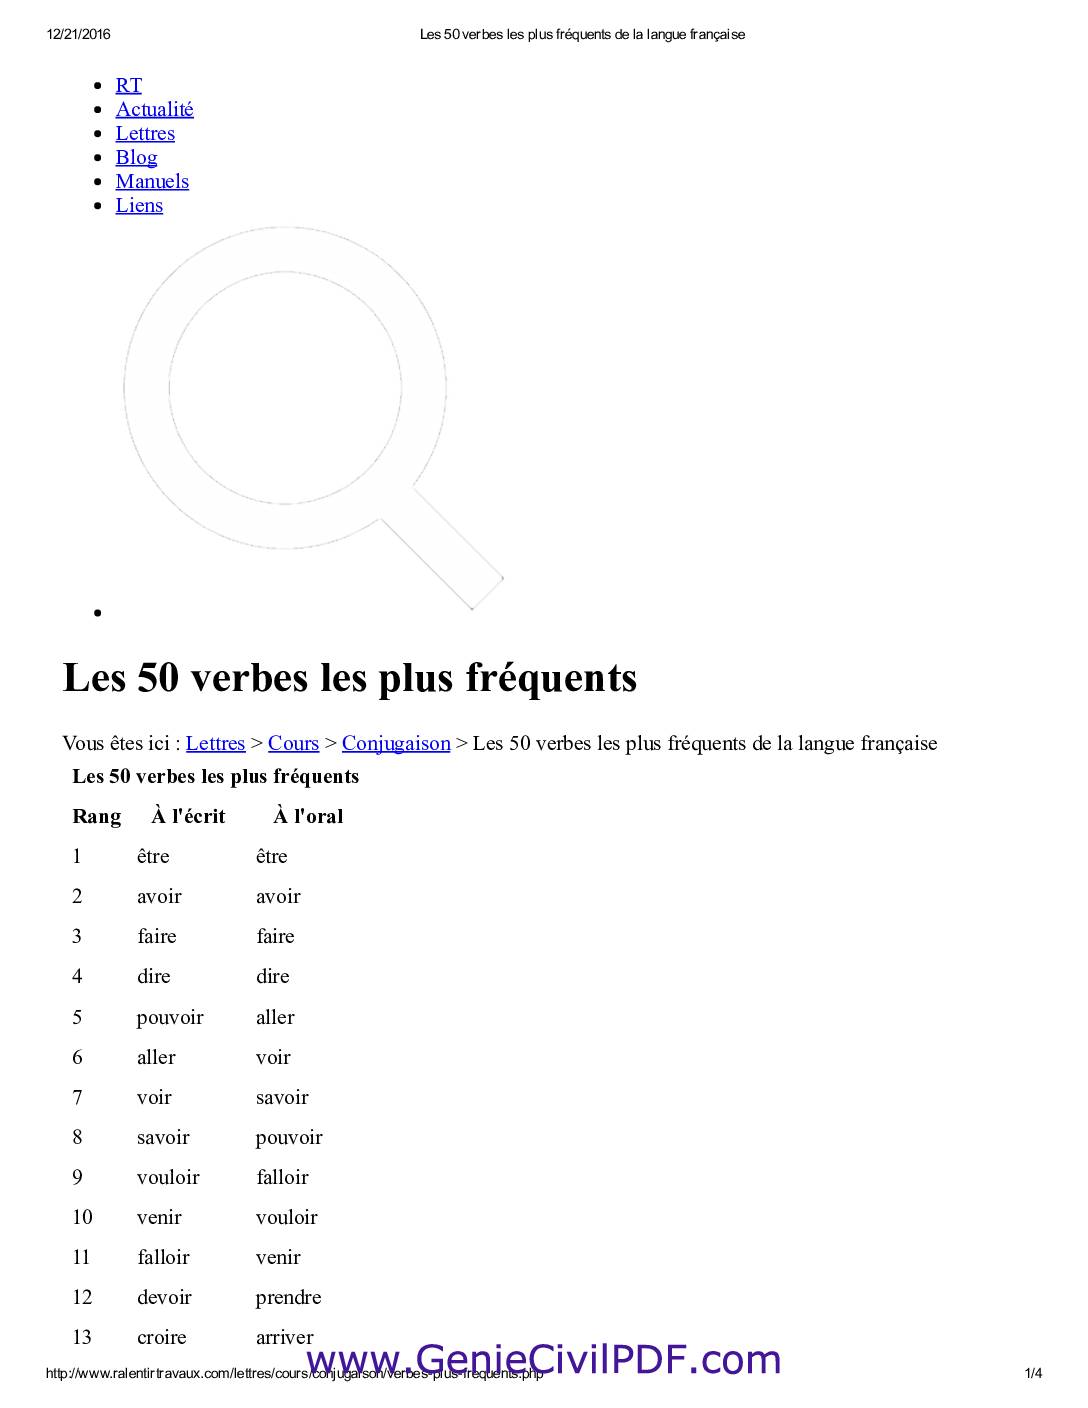 Les 50 Verbes Les Plus Fréquents de La Langue Française